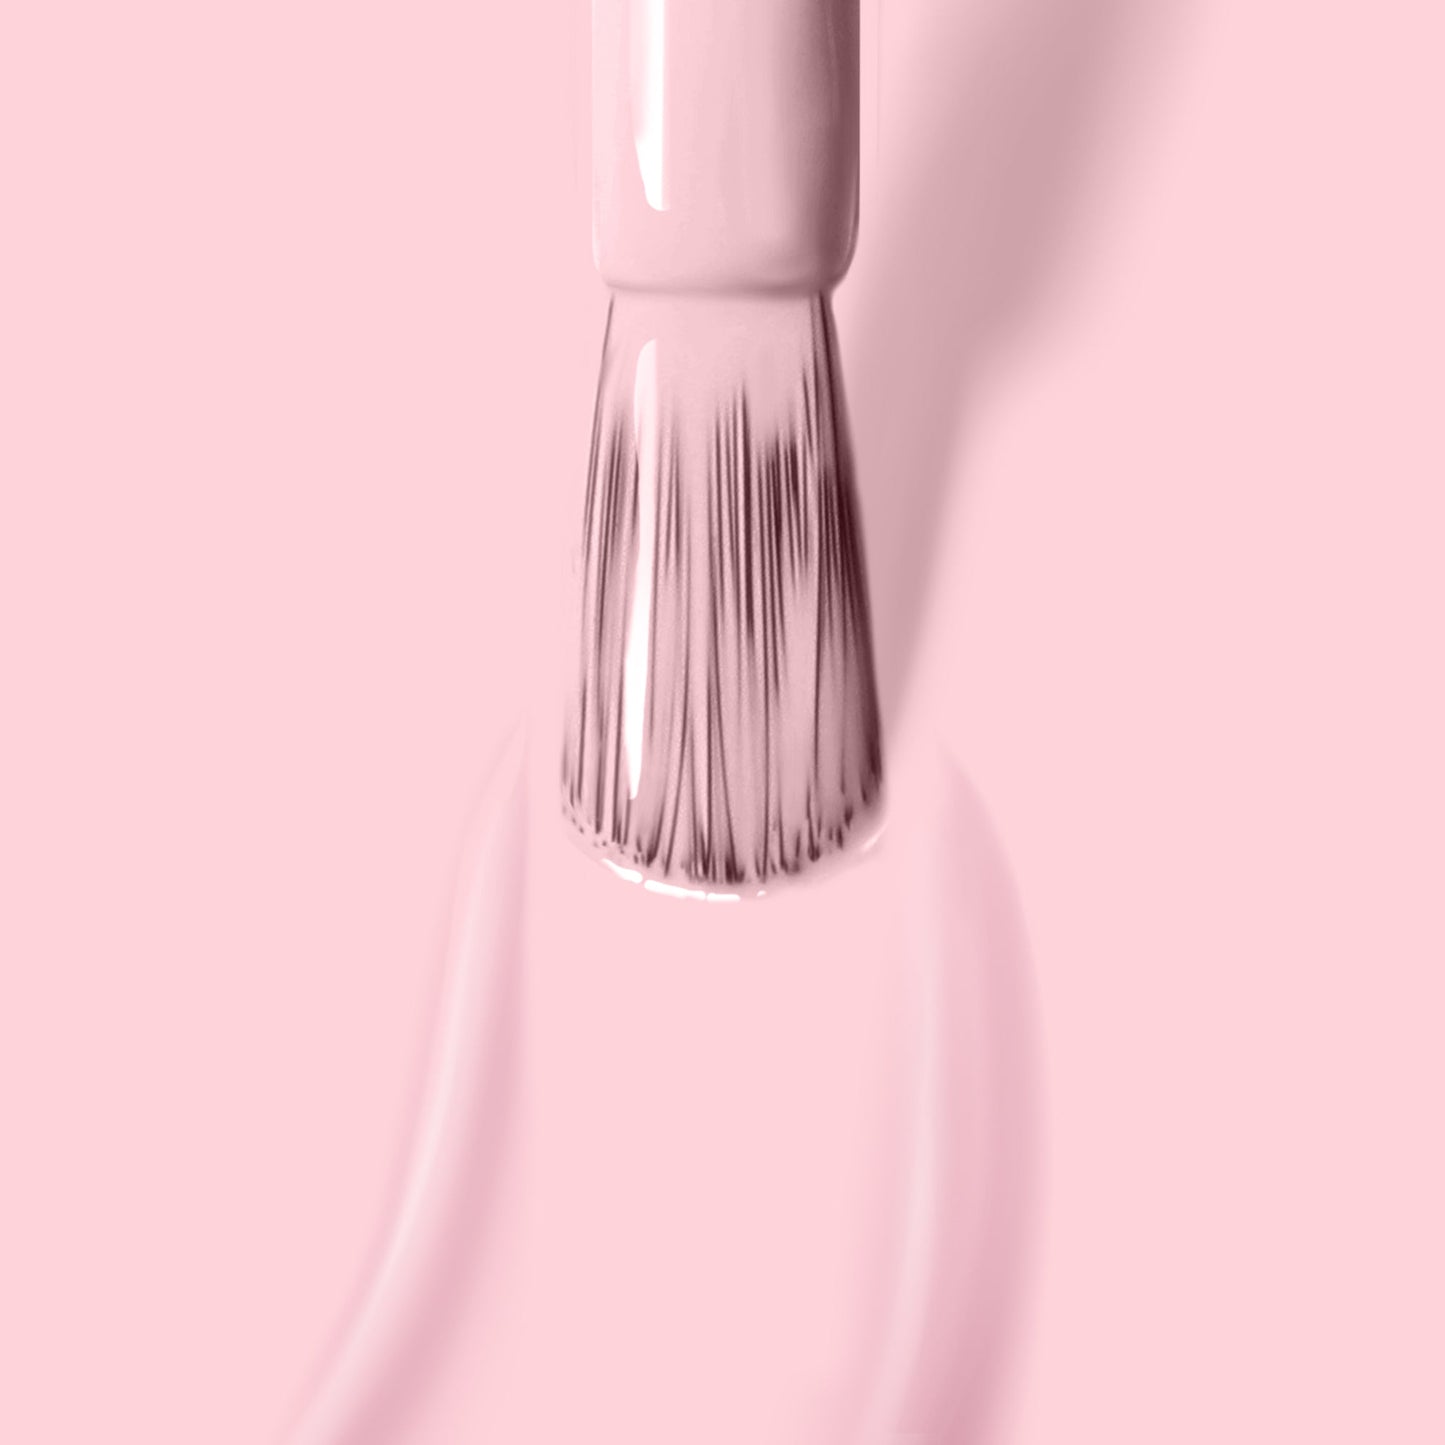 Candy Floss Nail Color | Gel-Like Nail Polish